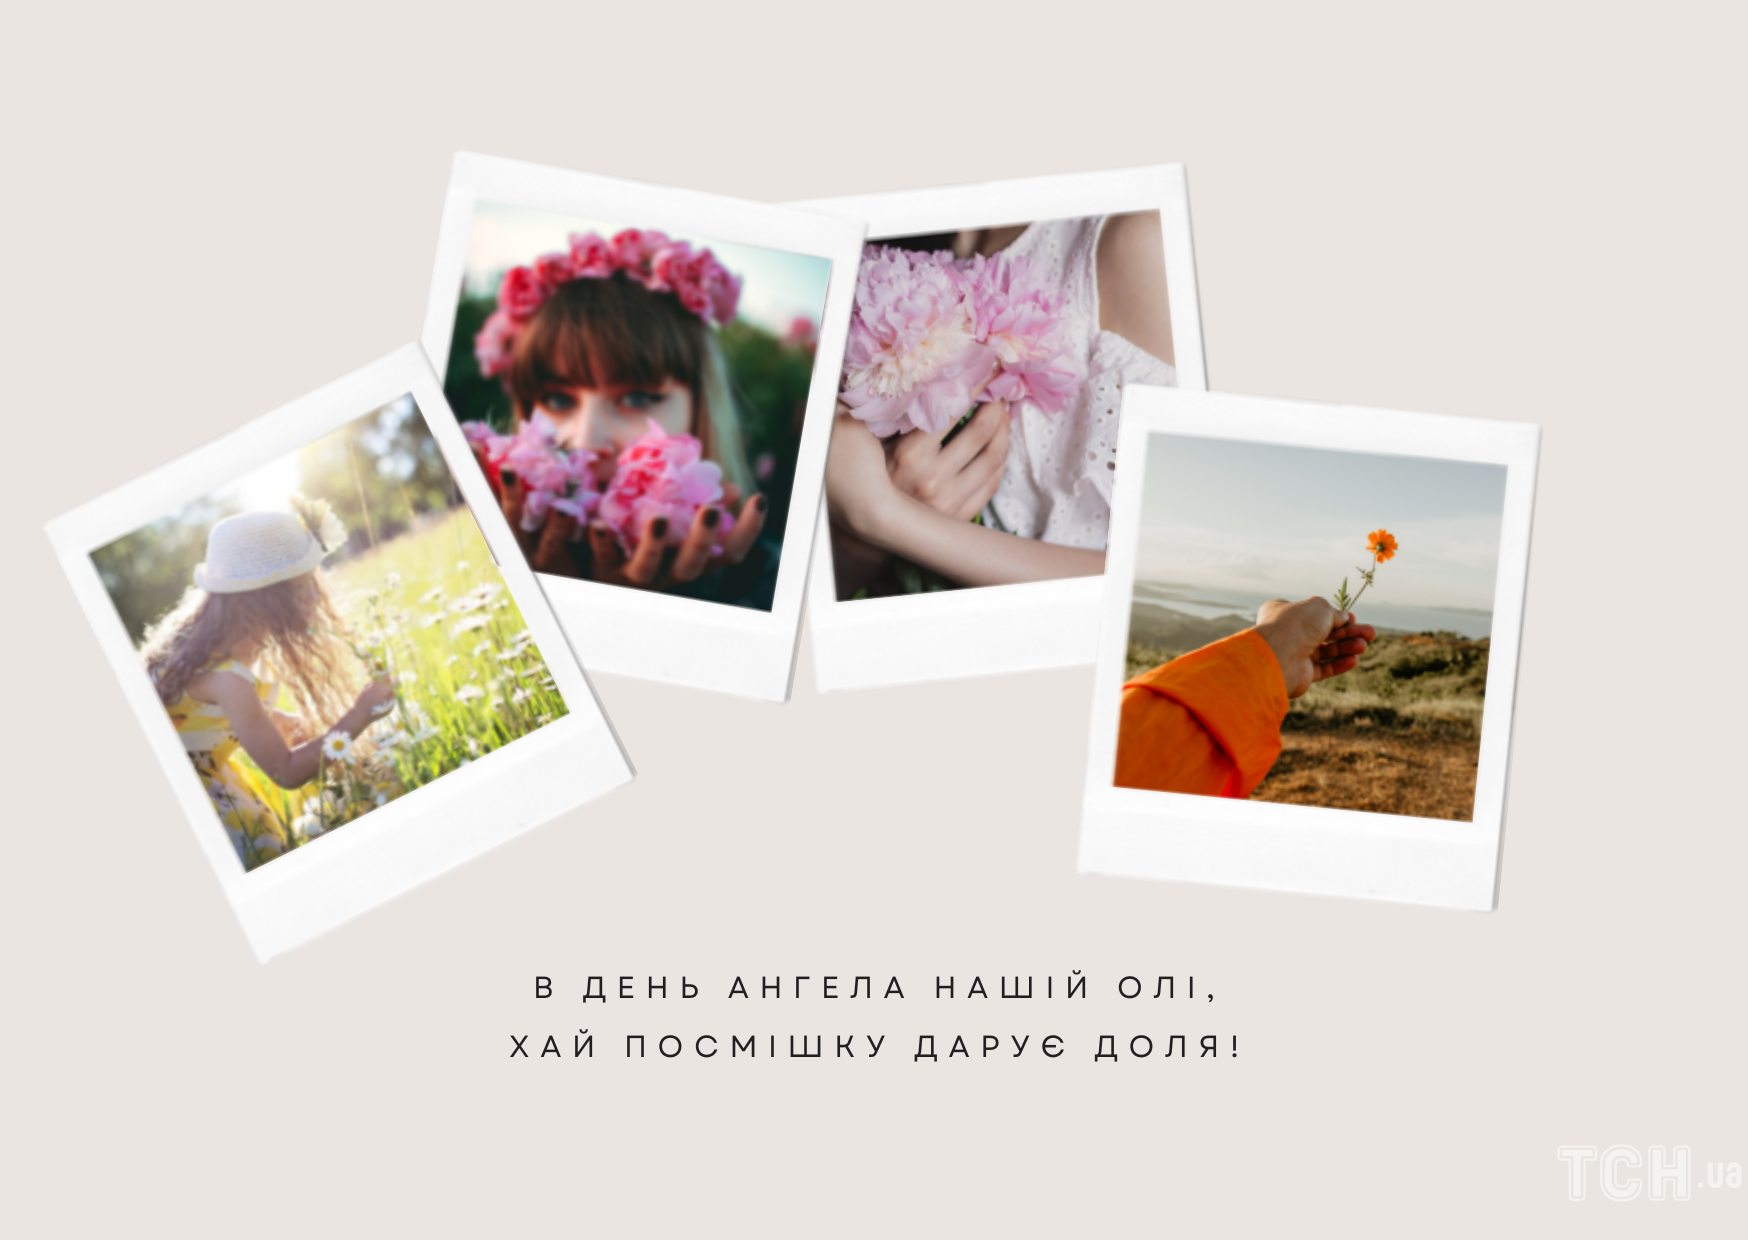 Поздравление с Днем ангела Ольги / © ТСН.ua